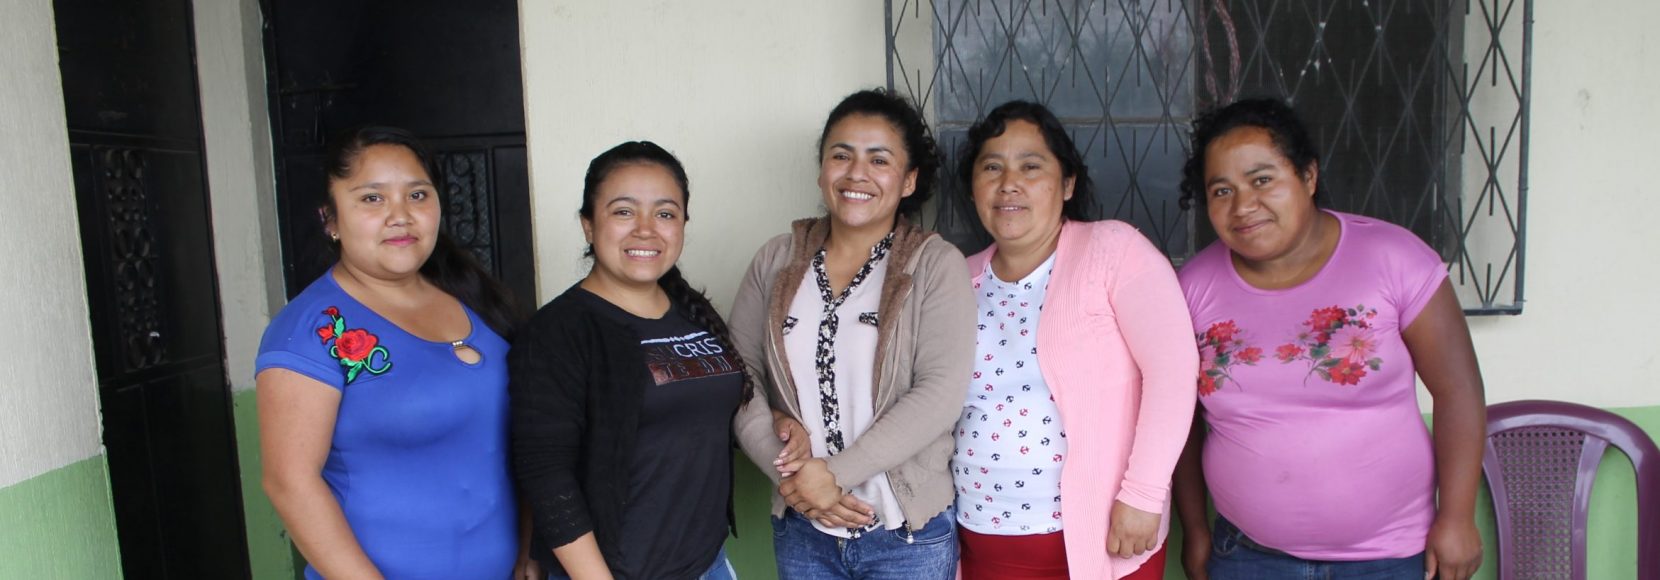 Women farmers in Guatemala.